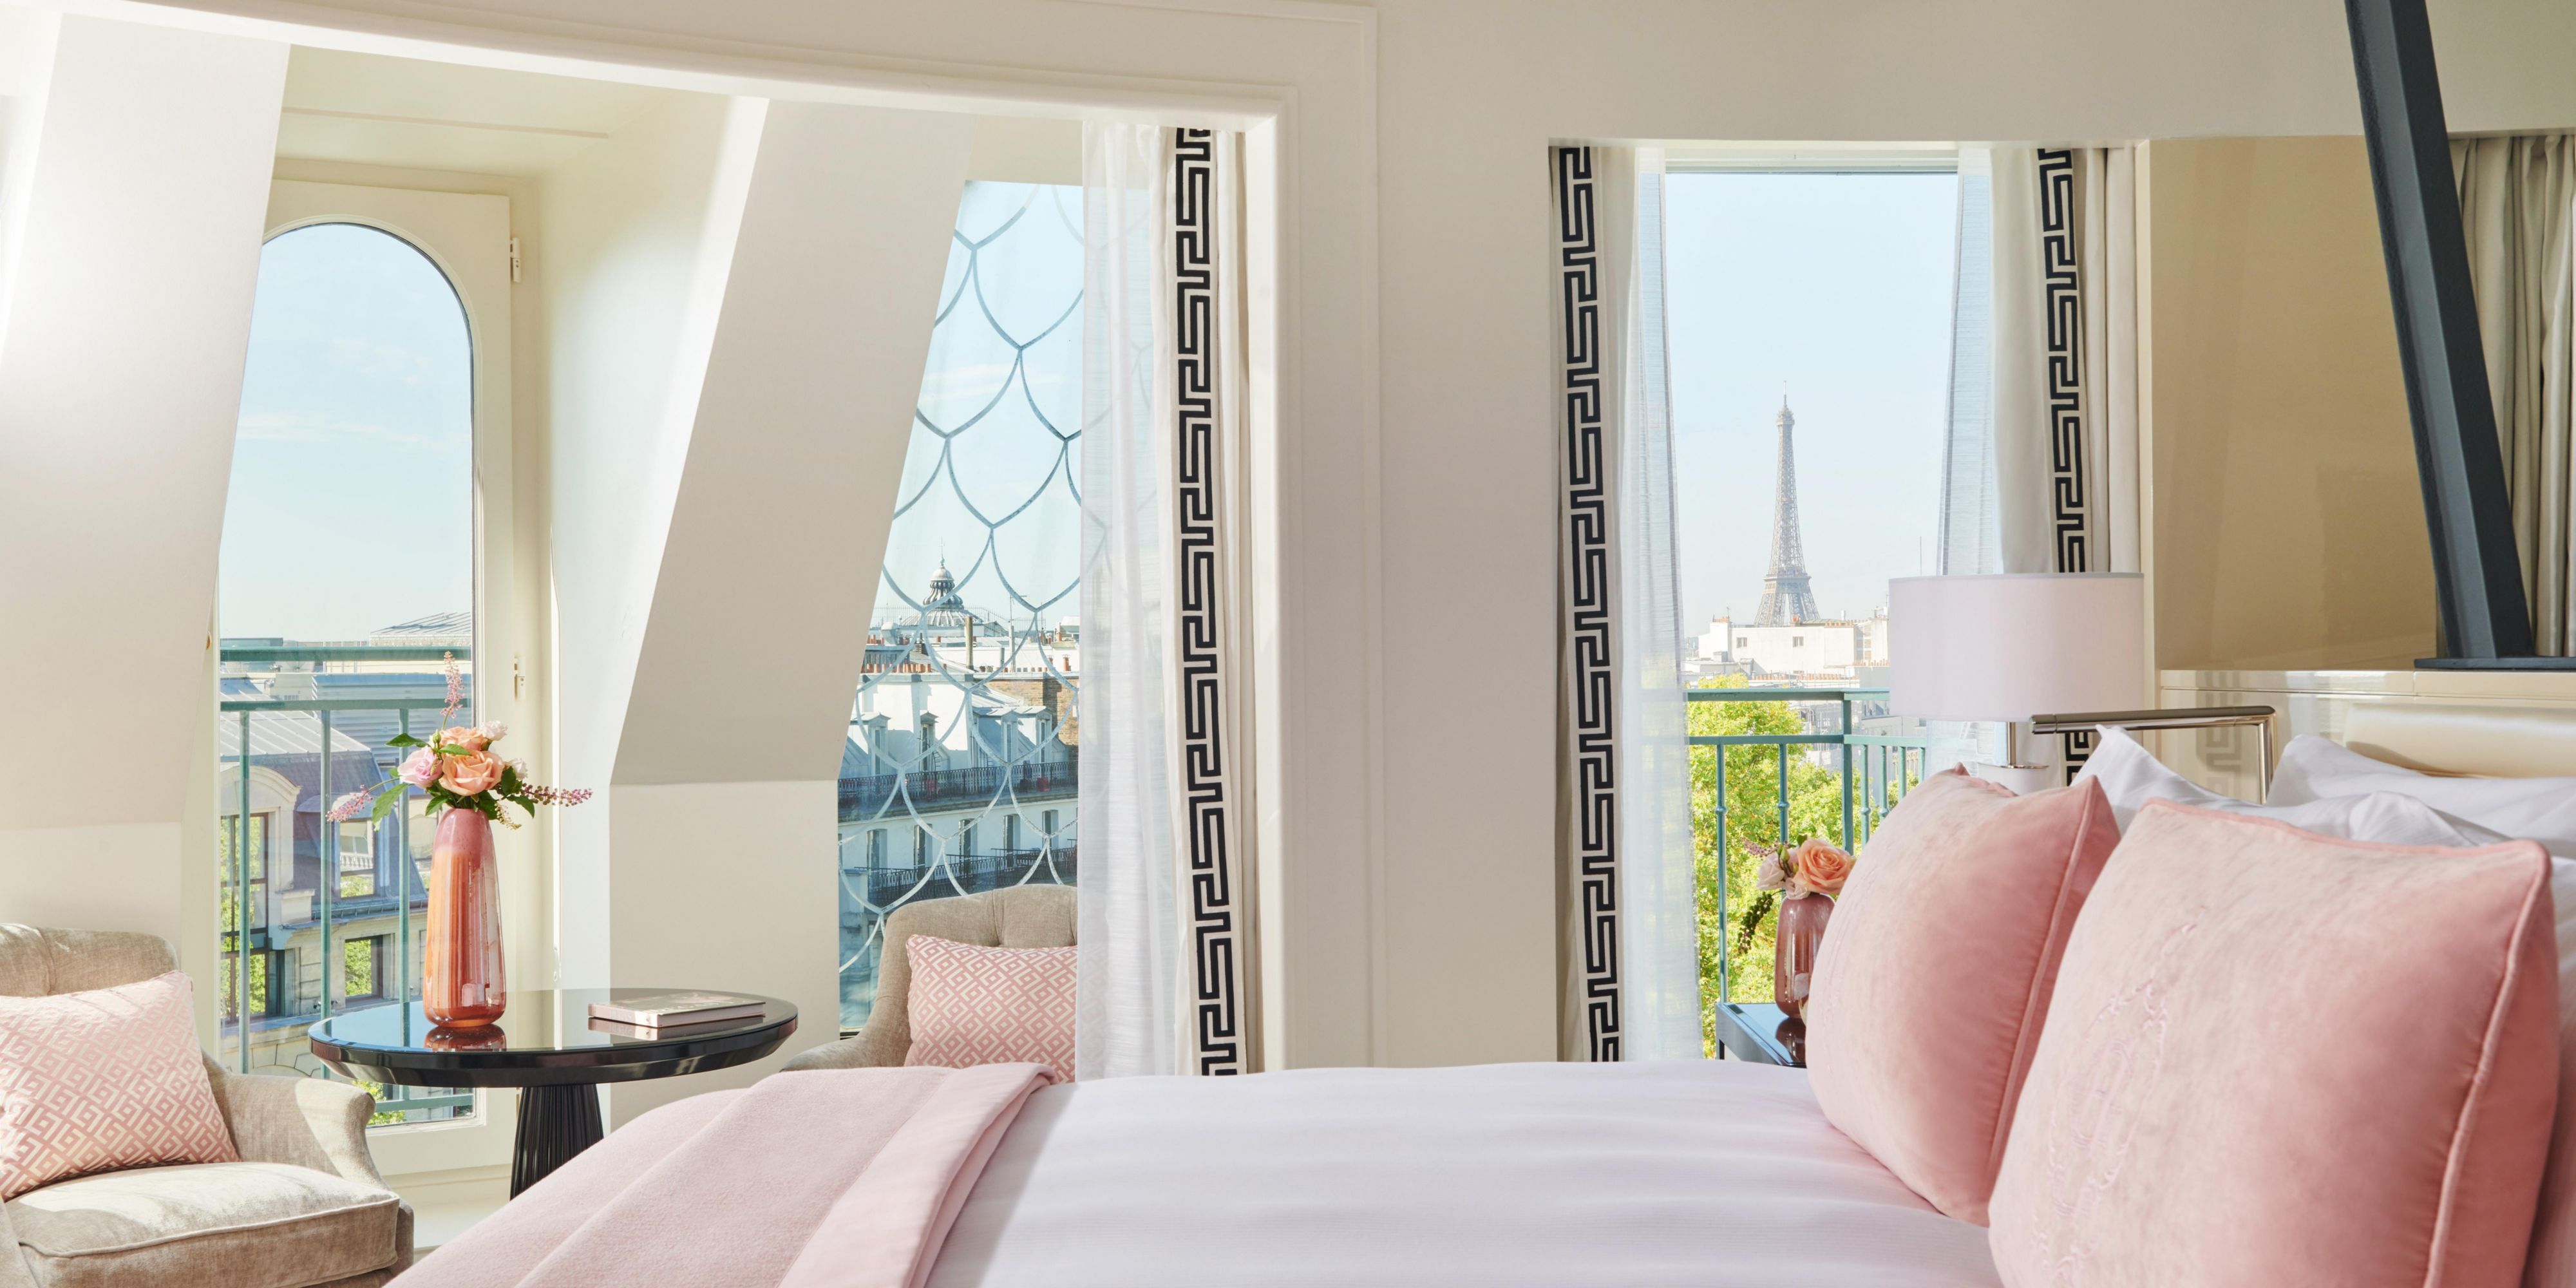 Le Signature Suites offrono comfort e riservatezza accoglienti, offrendo il massimo del lusso. Con una vista panoramica mozzafiato sul tetto dell'Opera Garnier o sulla Torre Eiffel, sono un rifugio tranquillo con un'atmosfera chic e contemporanea.